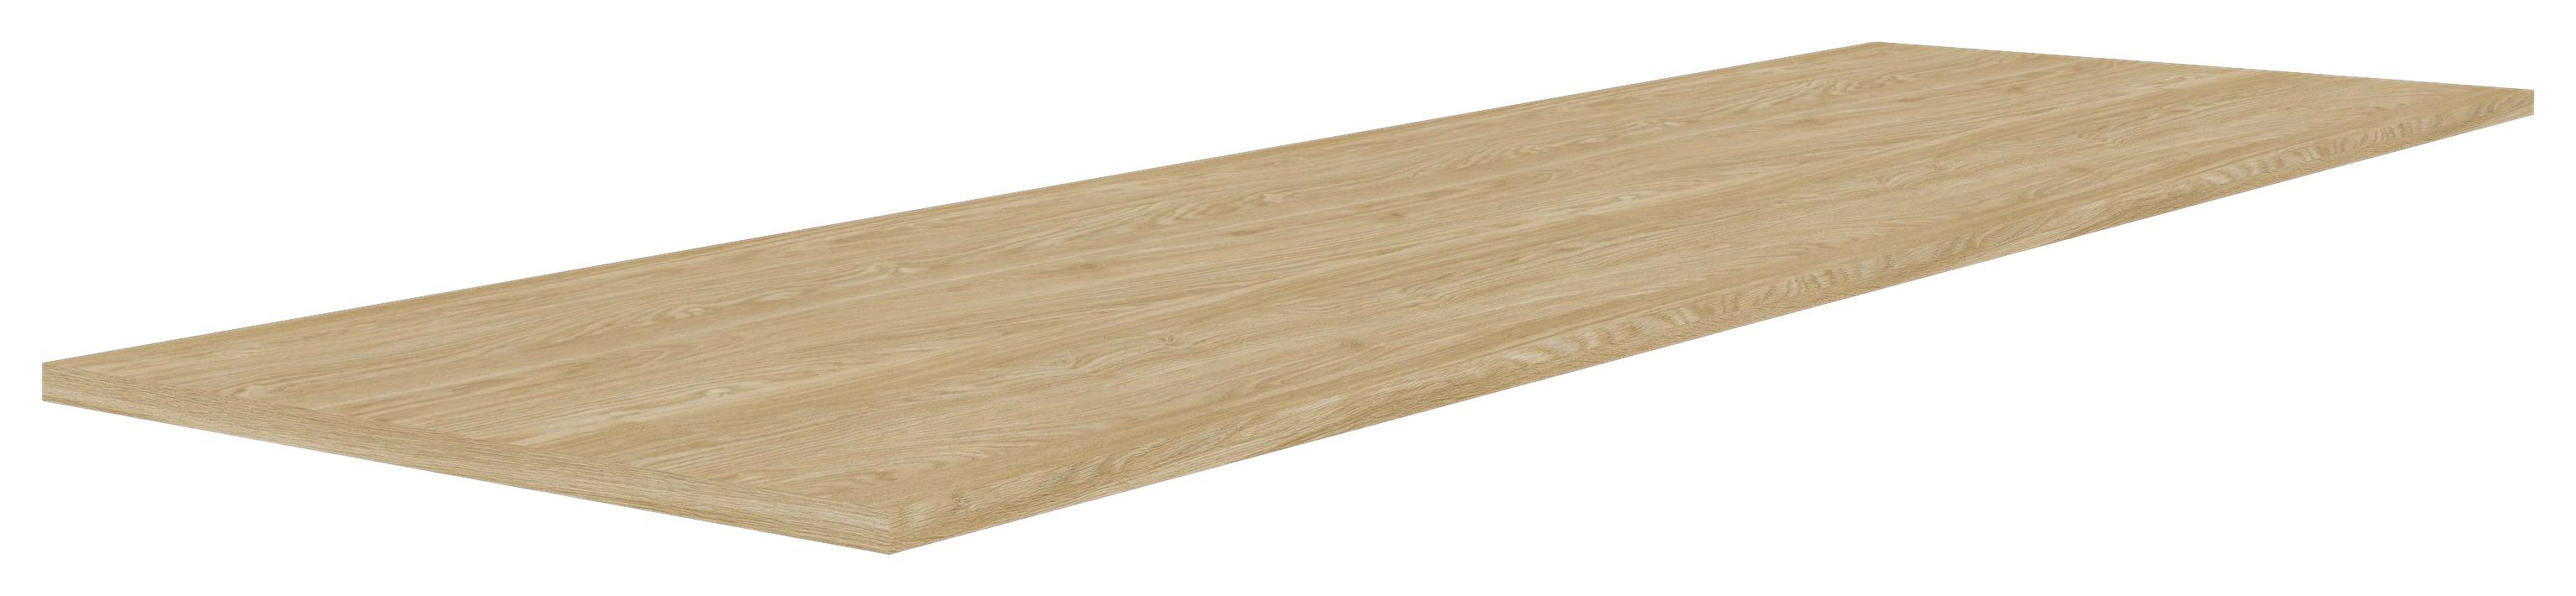 Vrchní Deska Unit-Elements - barvy dubu, Moderní, kompozitní dřevo (182,6/42/1,6cm) - Ondega